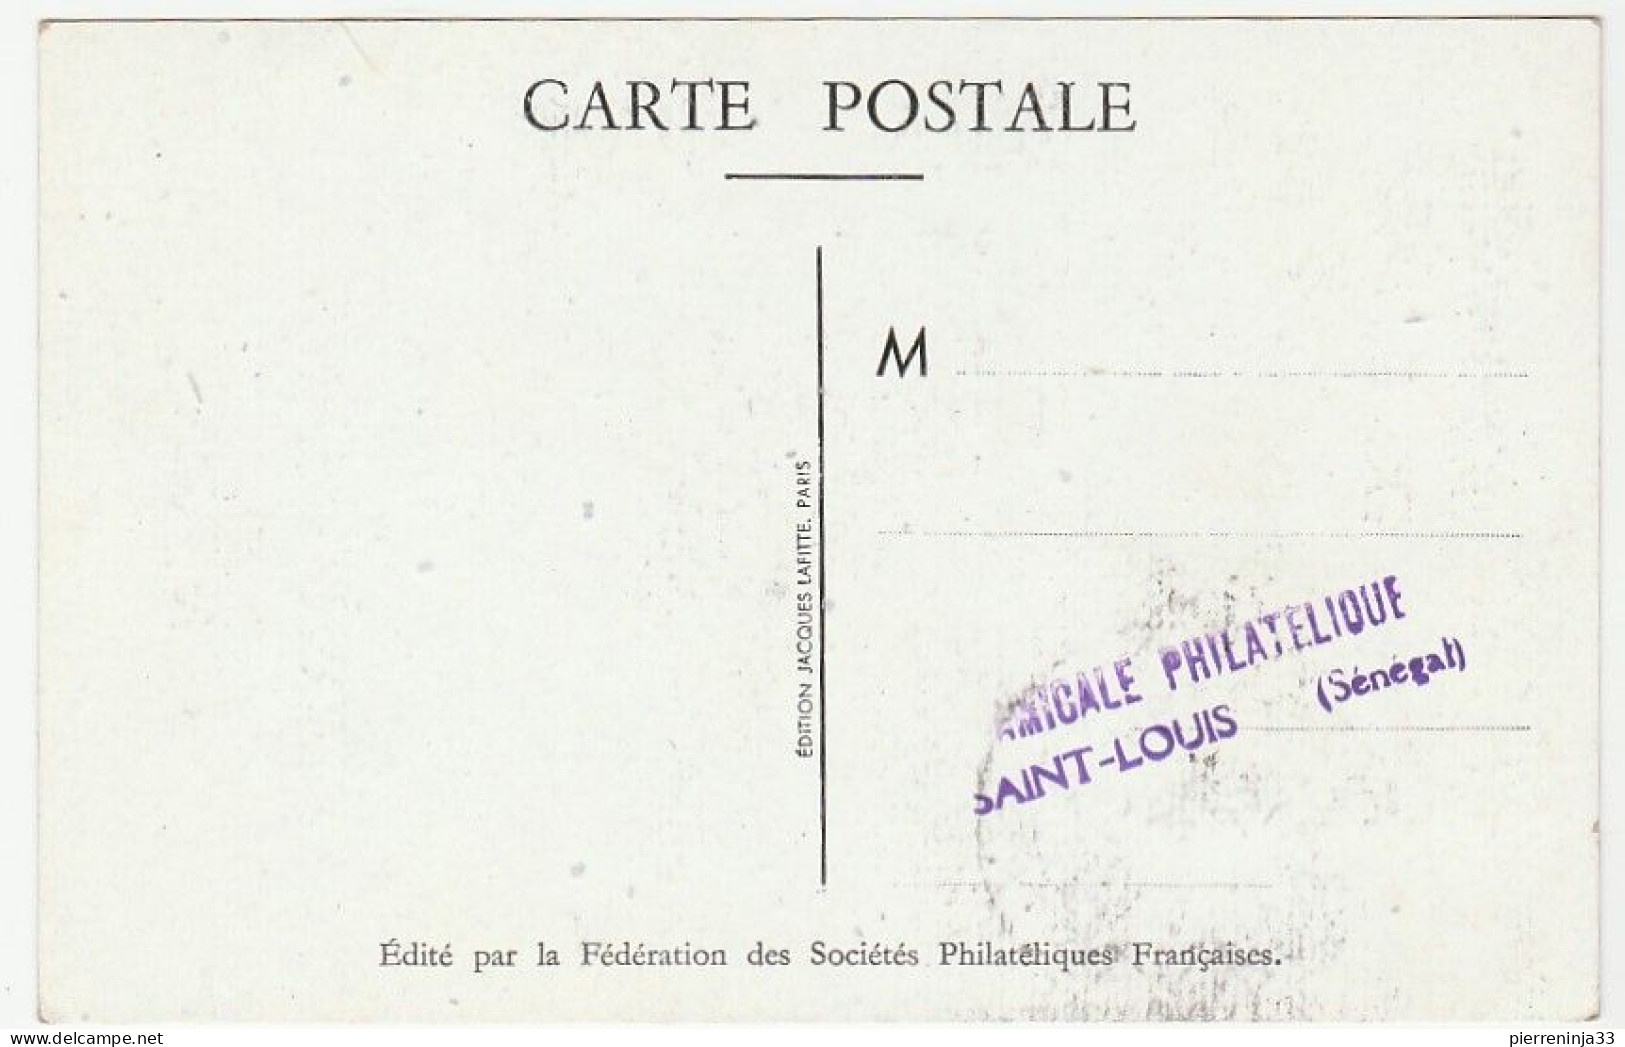 Carte Journée Du Timbre, Saint Louis / Sénégal, 1948, Aviation - Covers & Documents